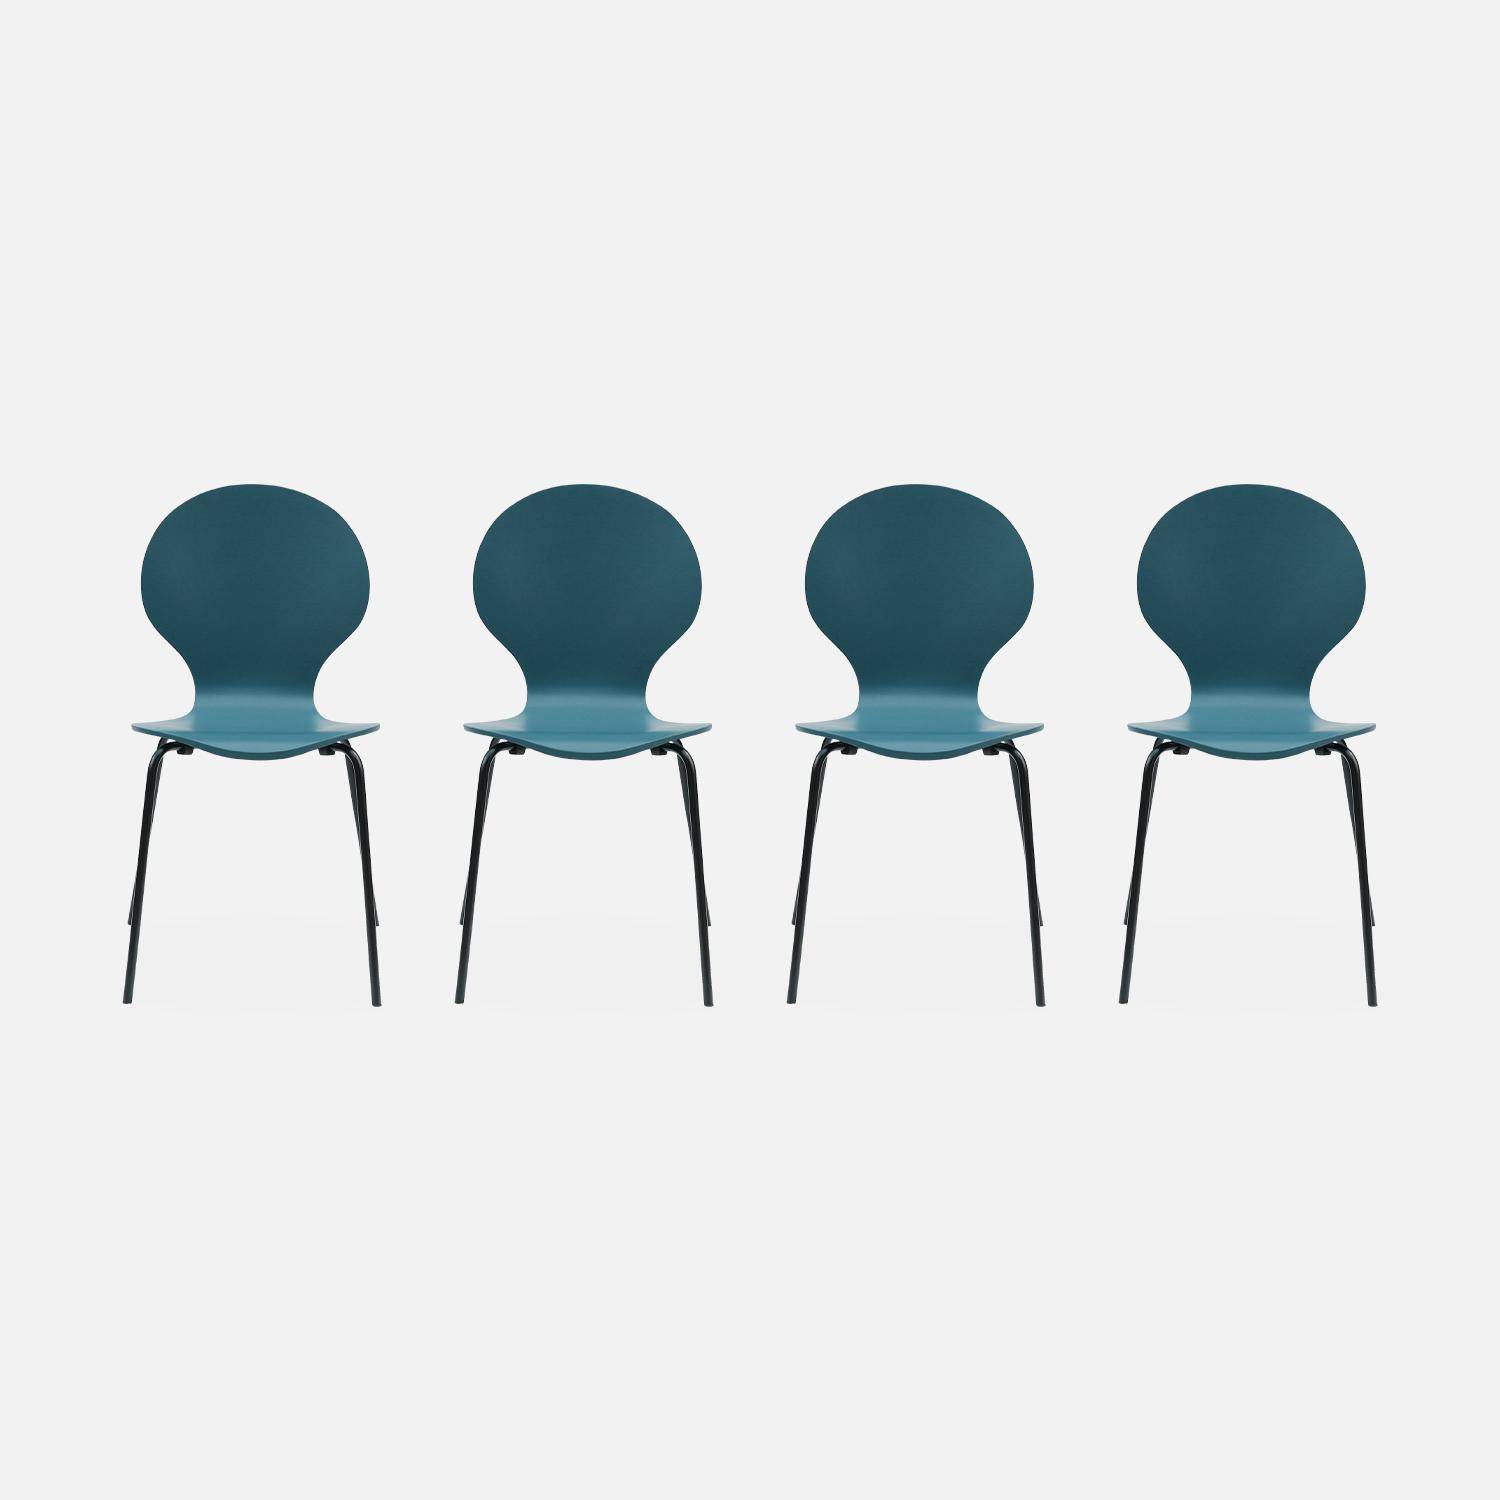 4er Set stapelbare Retro-Stühle in blau, Hevea-Holz und Sperrholz, Beine aus Stahl, Naomi, B 43 x T 48 x H 87cm,sweeek,Photo3